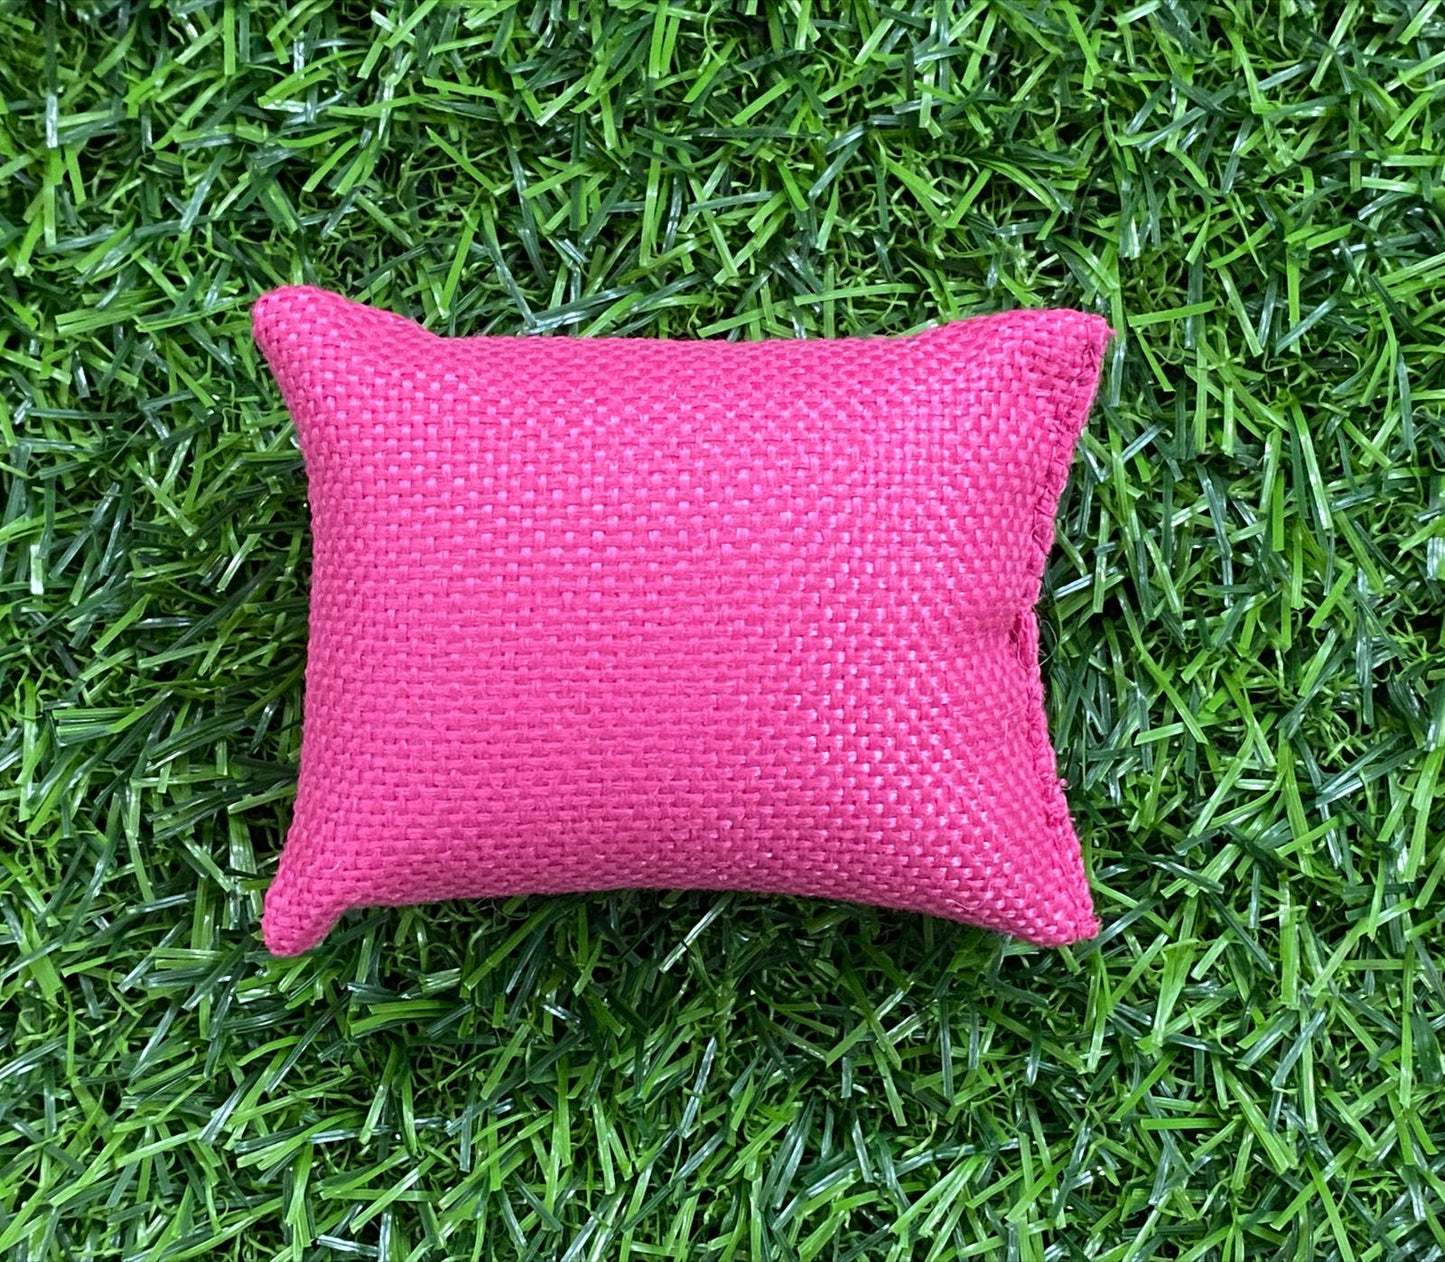 Rakhi Packaging Cushion Pillow- 1 piece – Pink